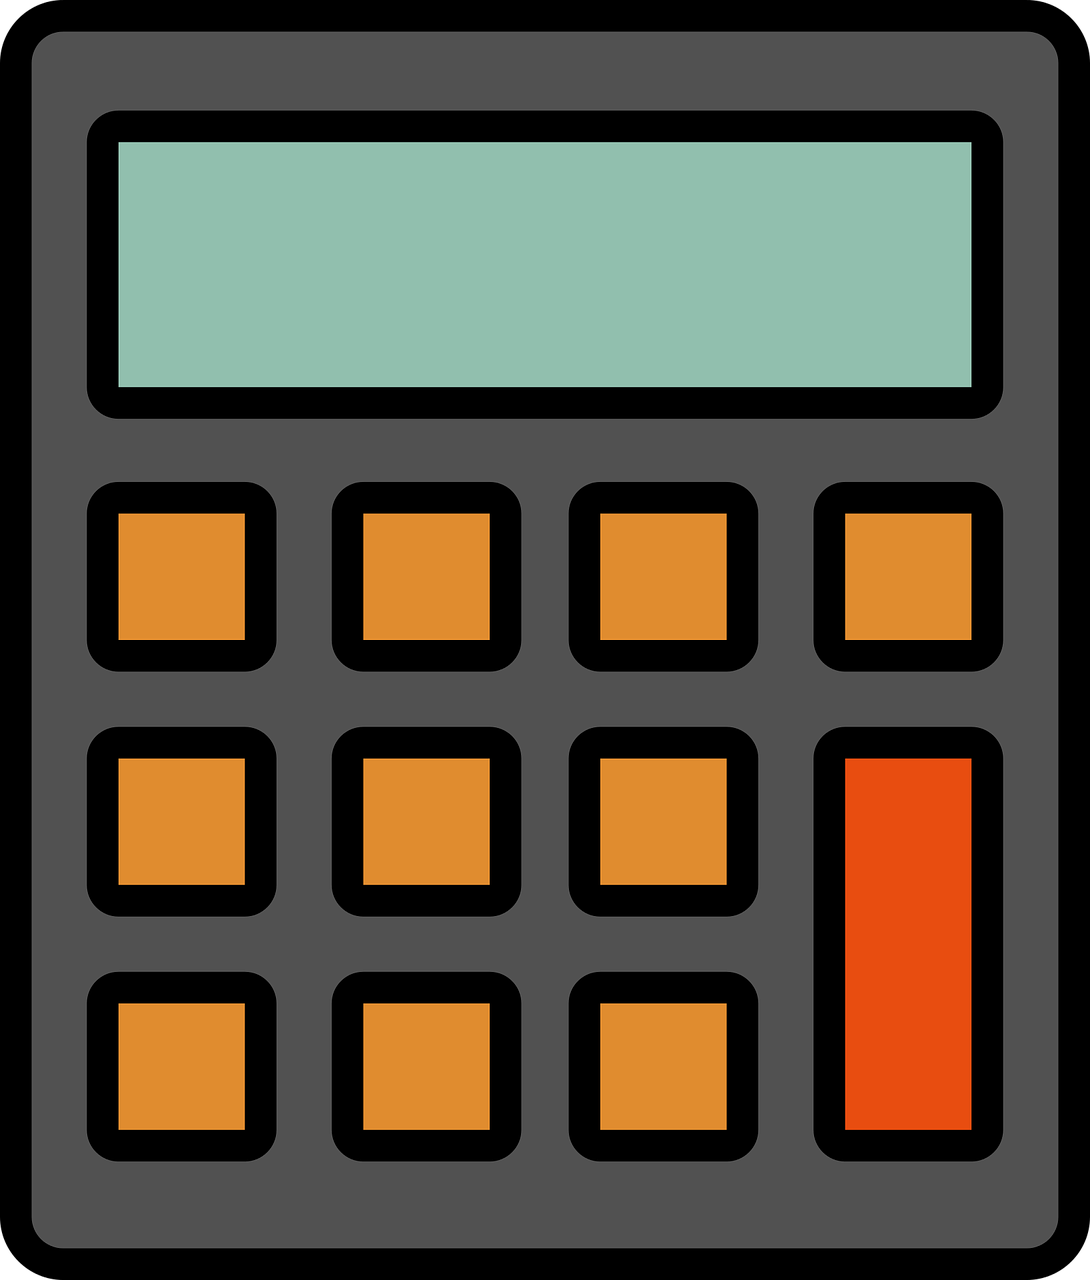 Дуин калькулятор. Значок калькулятора. Калькулятор иконка. Пиктограмма калькулятор. Калькулятор приложение иконка.